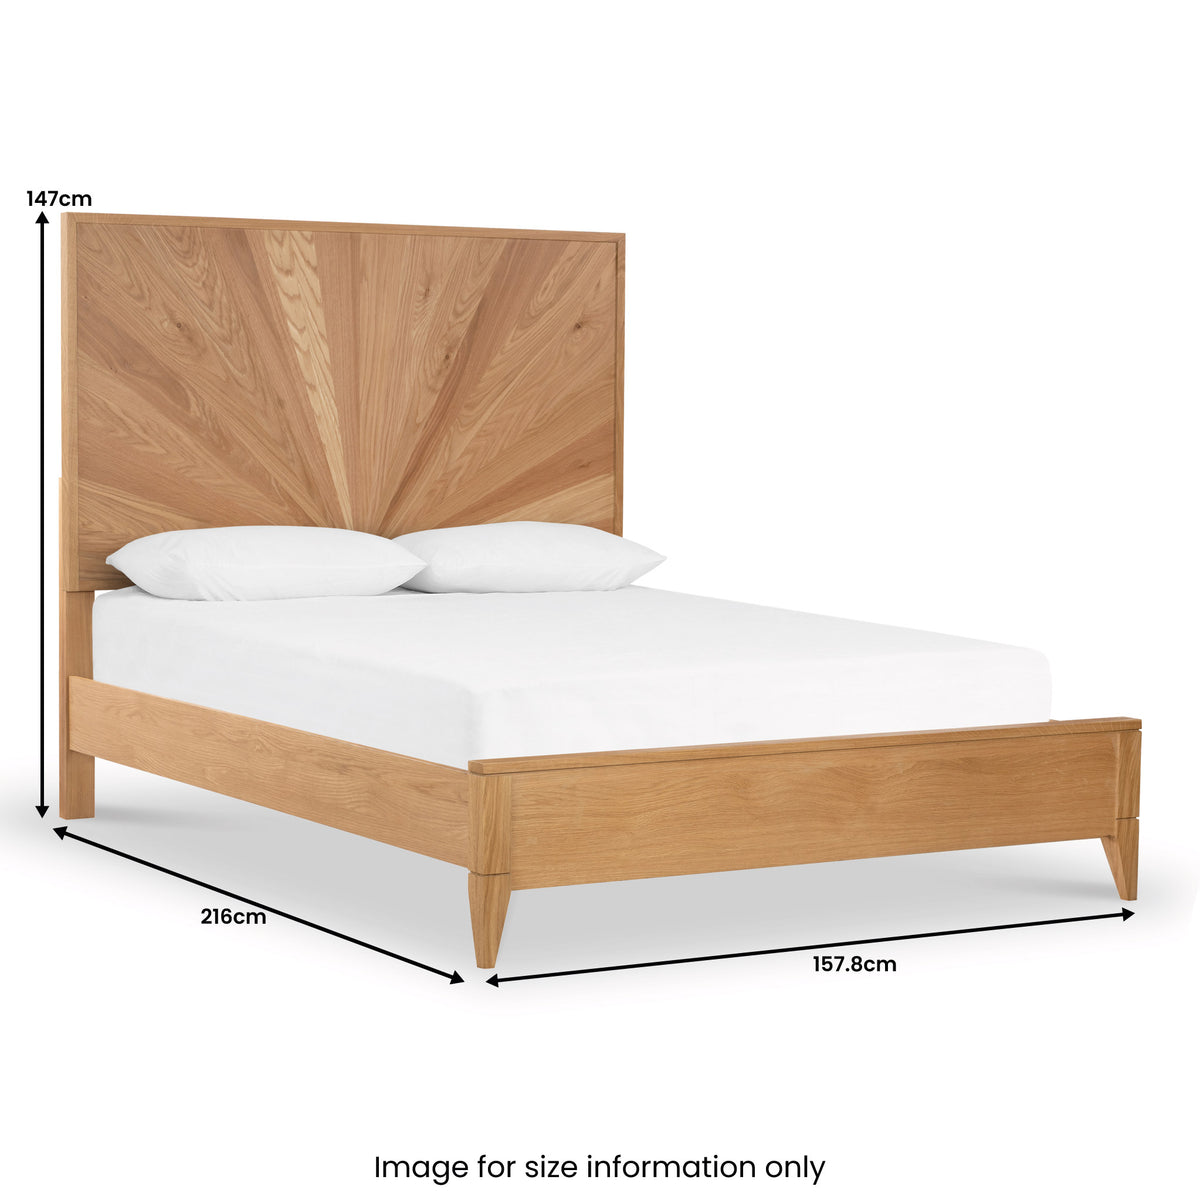 Sunburst Oak King Bed Frame dimensions